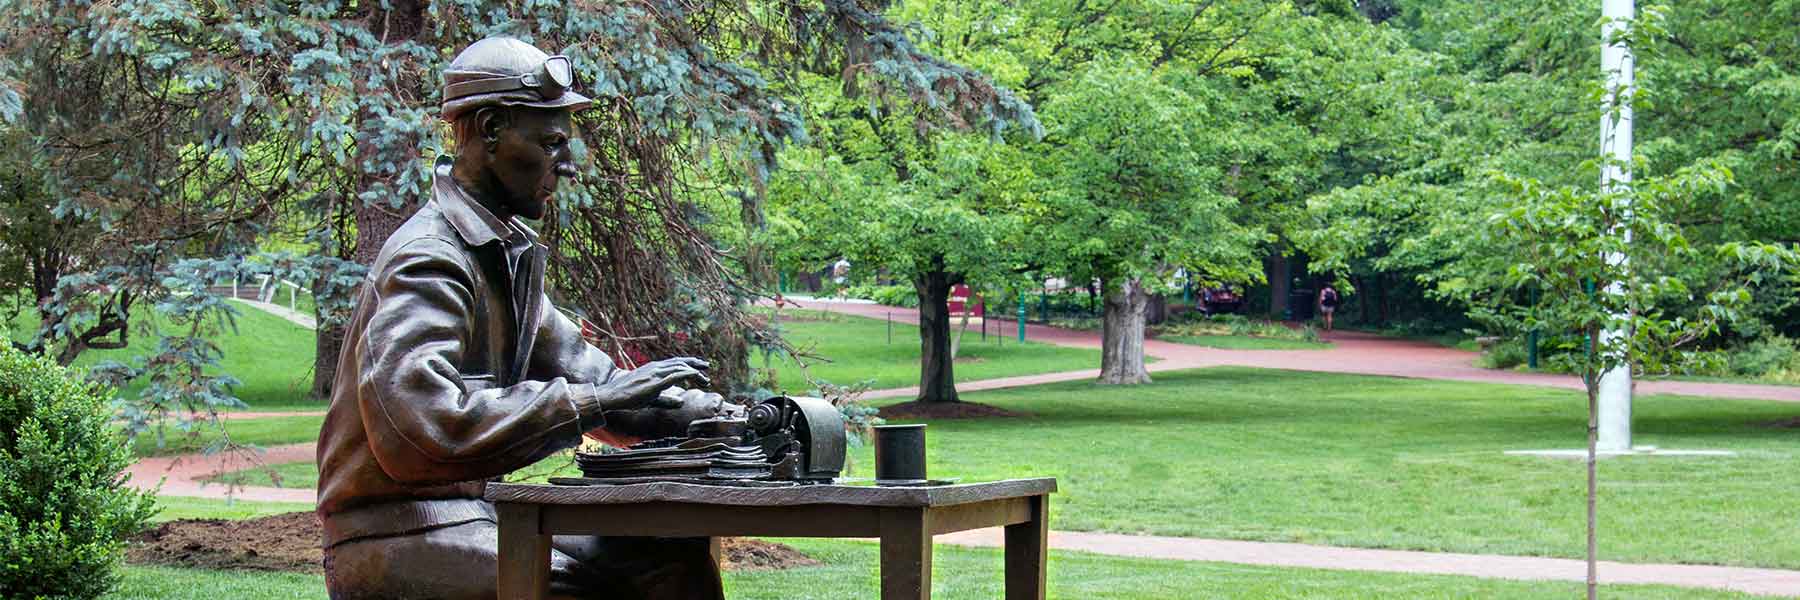 Outdoor sculpture of Indiana University alumnus and journalist Ernie Pyle